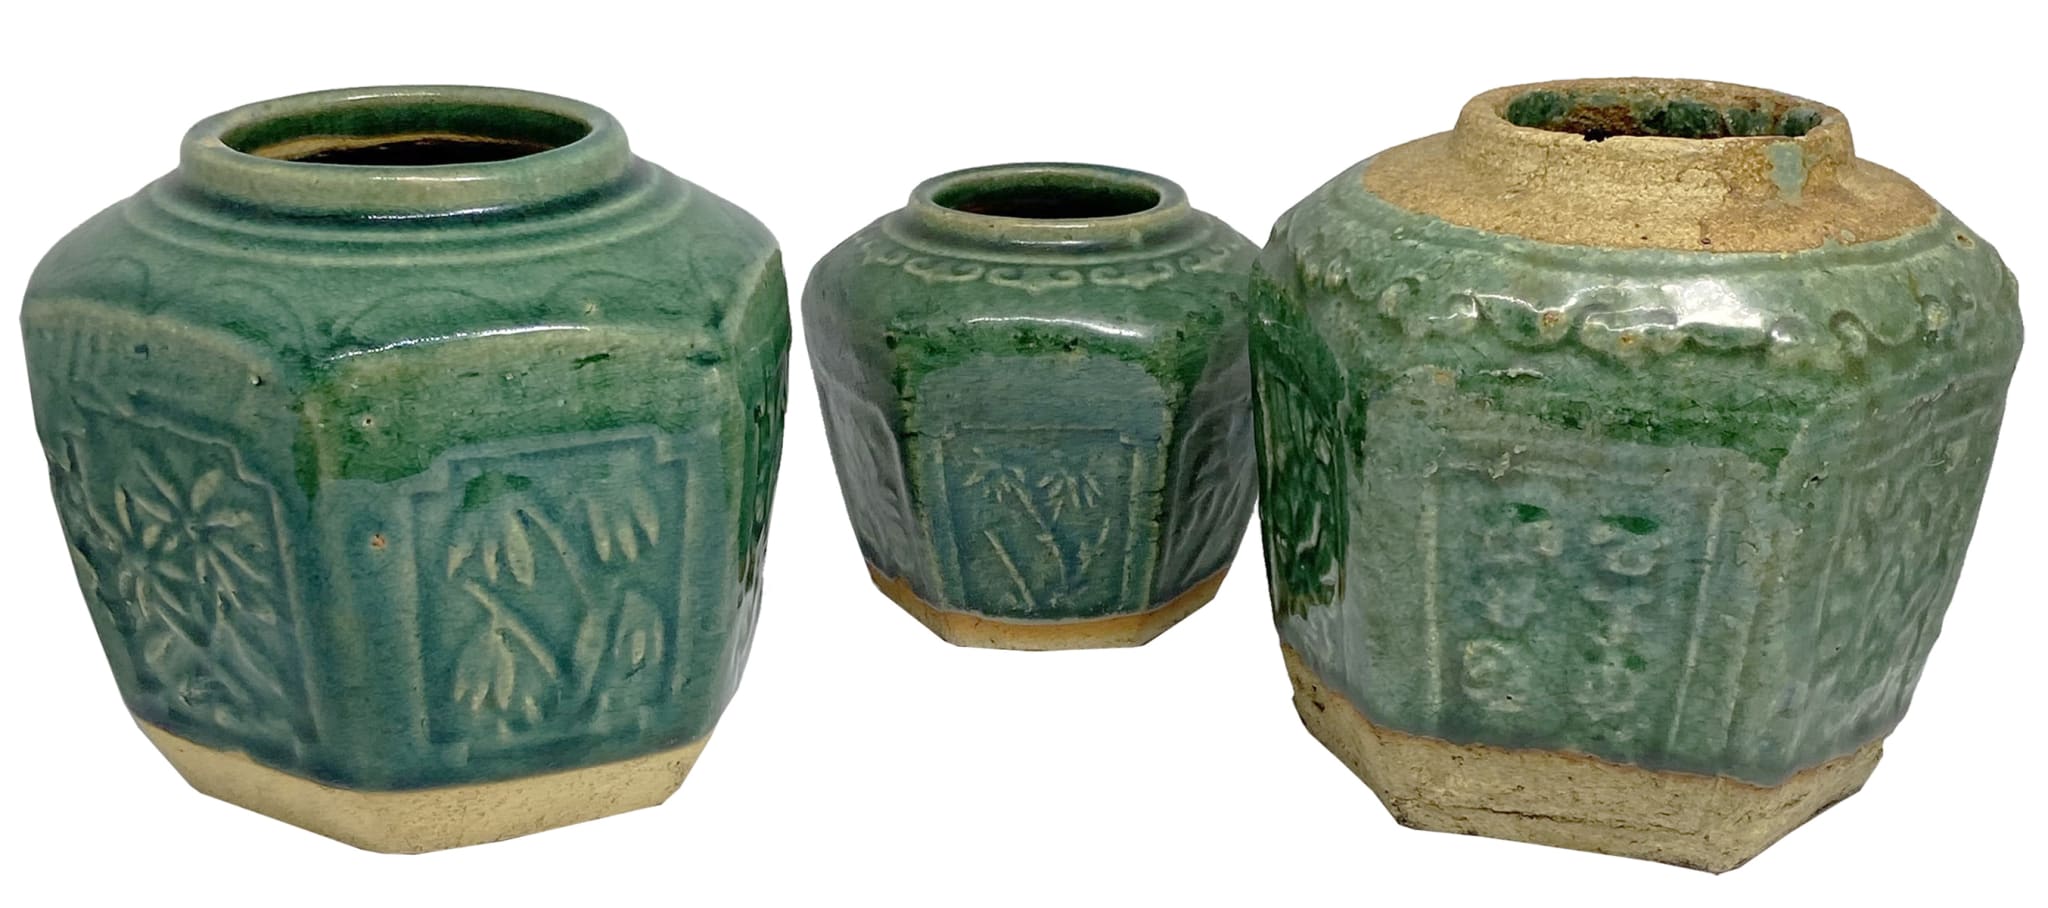 Hexagonal Green Chinese Ceramic Ginger Jars